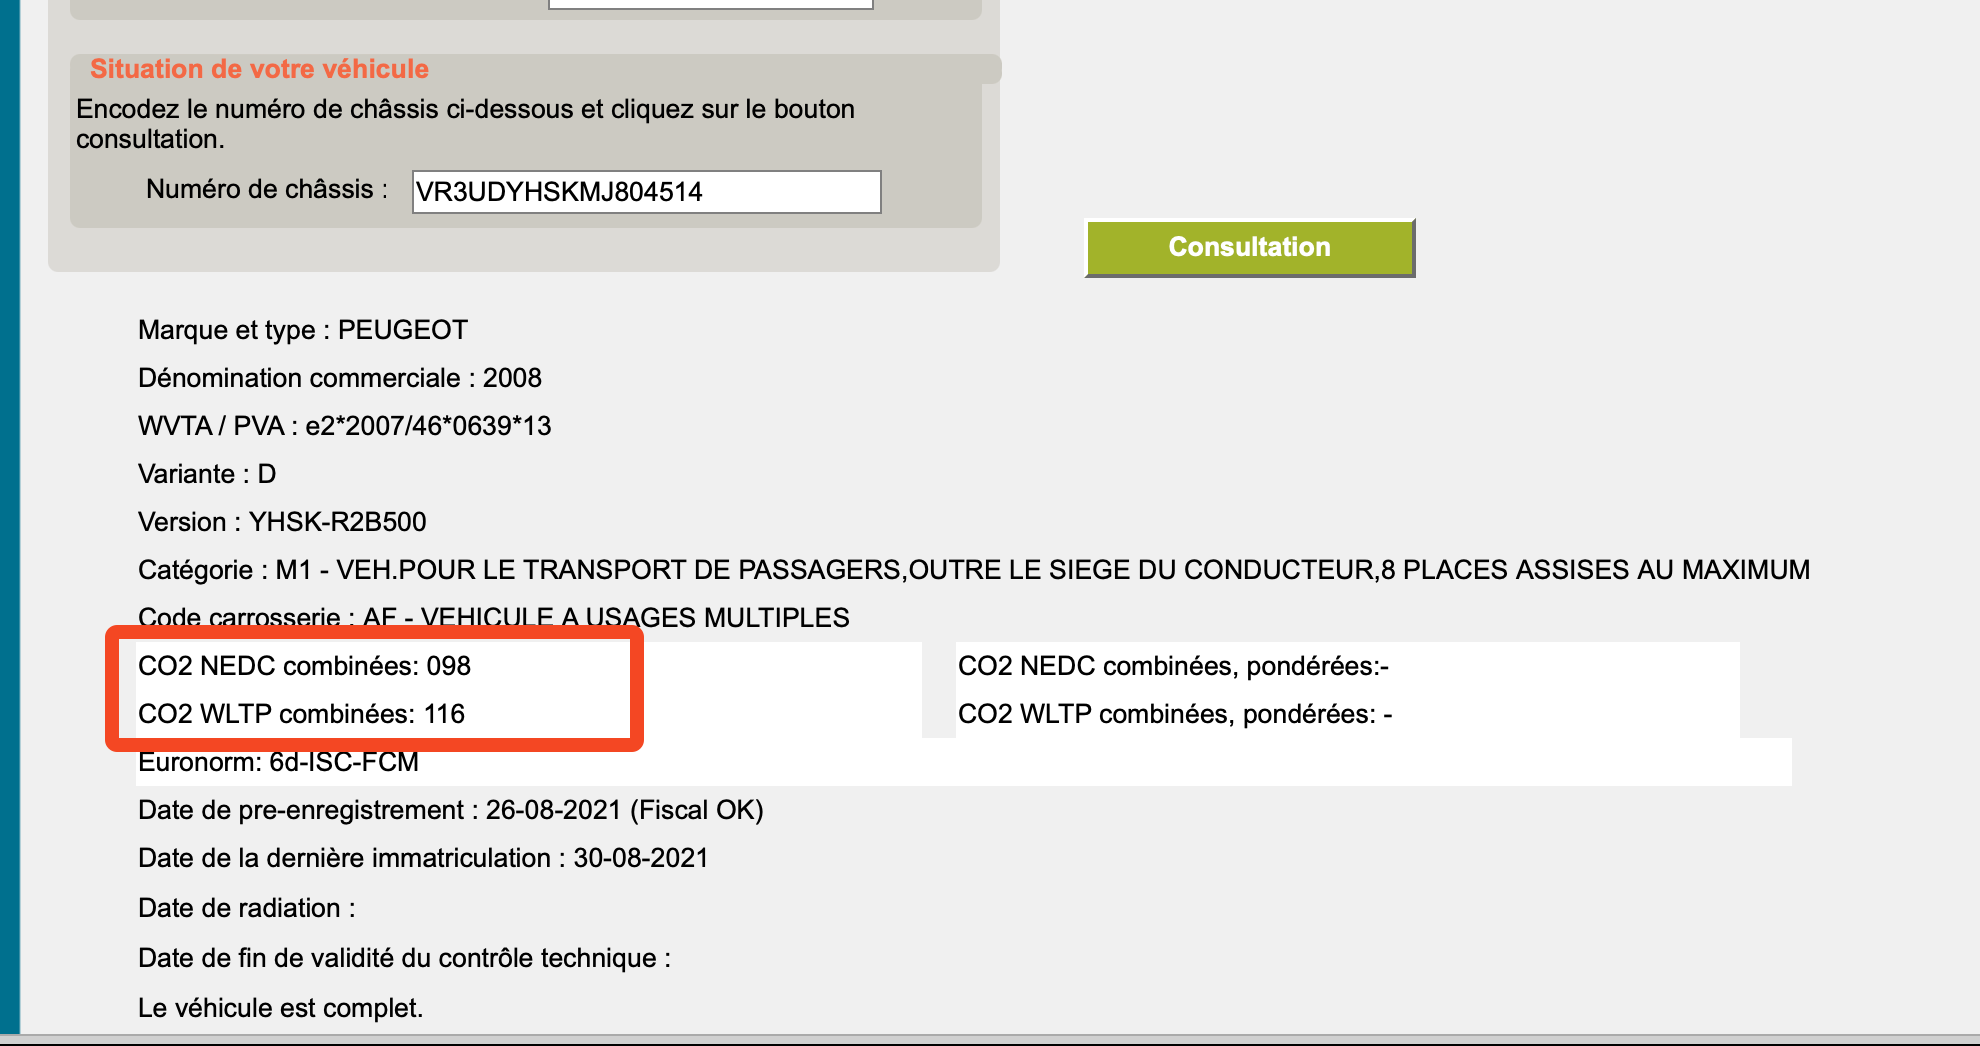 снимок экрана из бельгийского реестра со значениями nedc и wltp